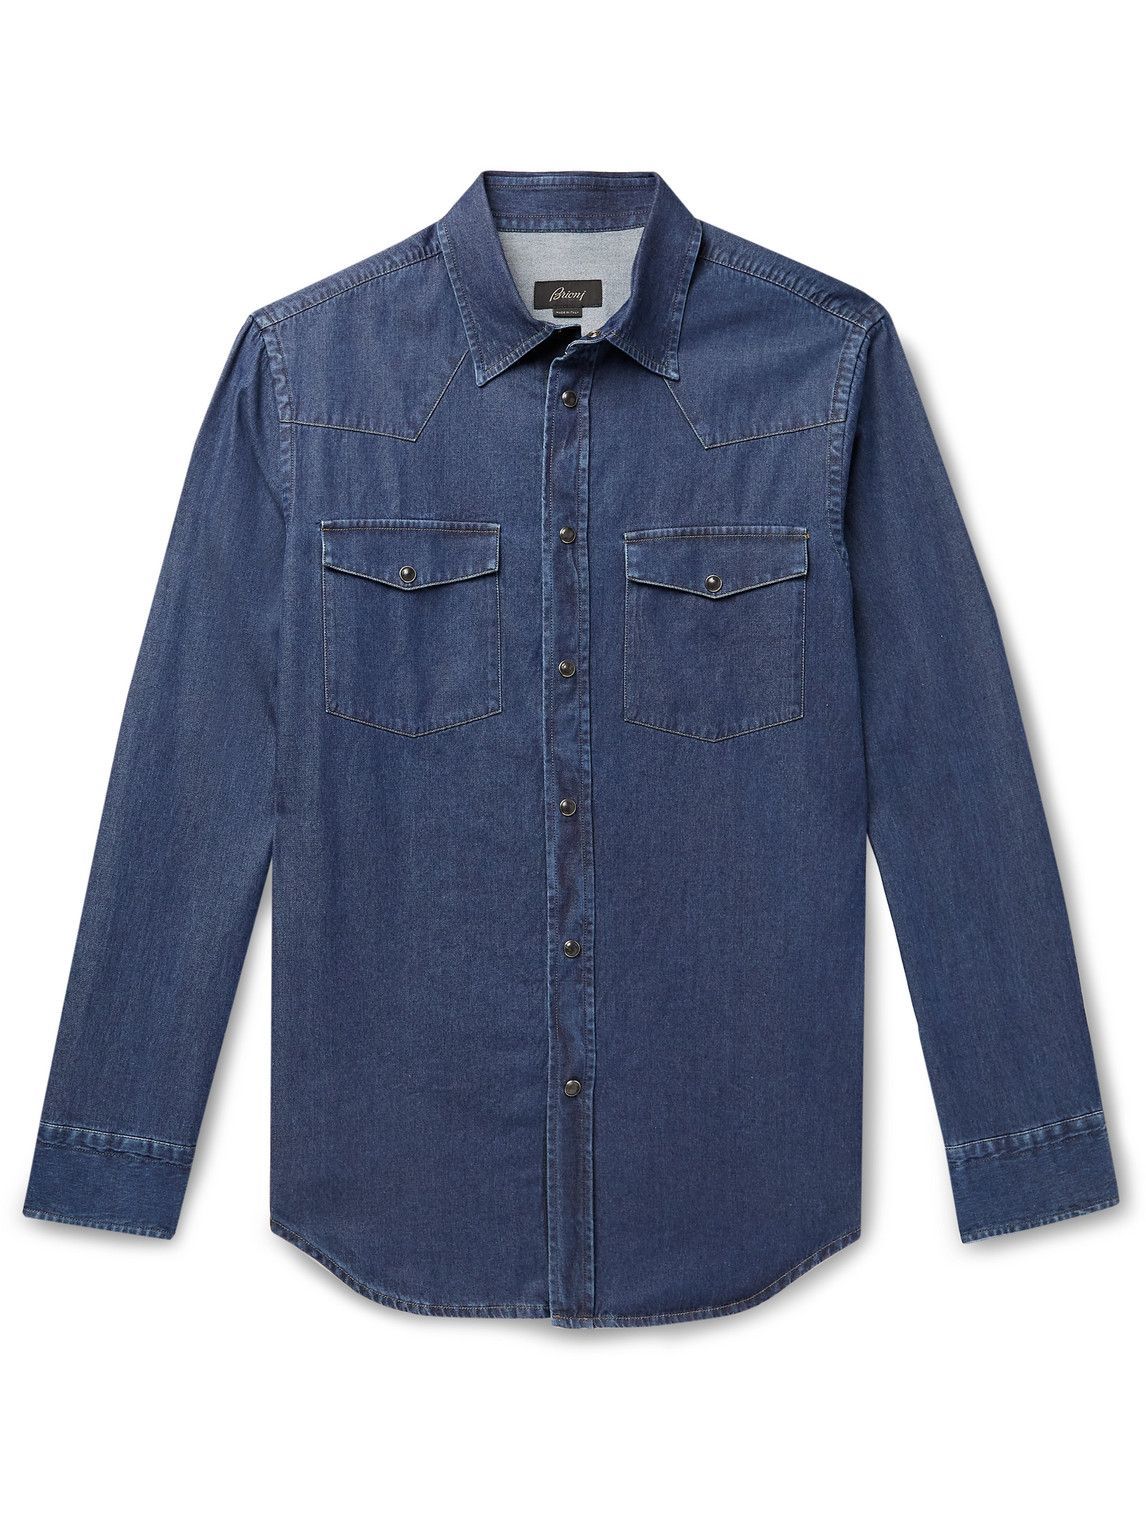 Brioni - Garment-Dyed Denim Western Shirt - Blue Brioni